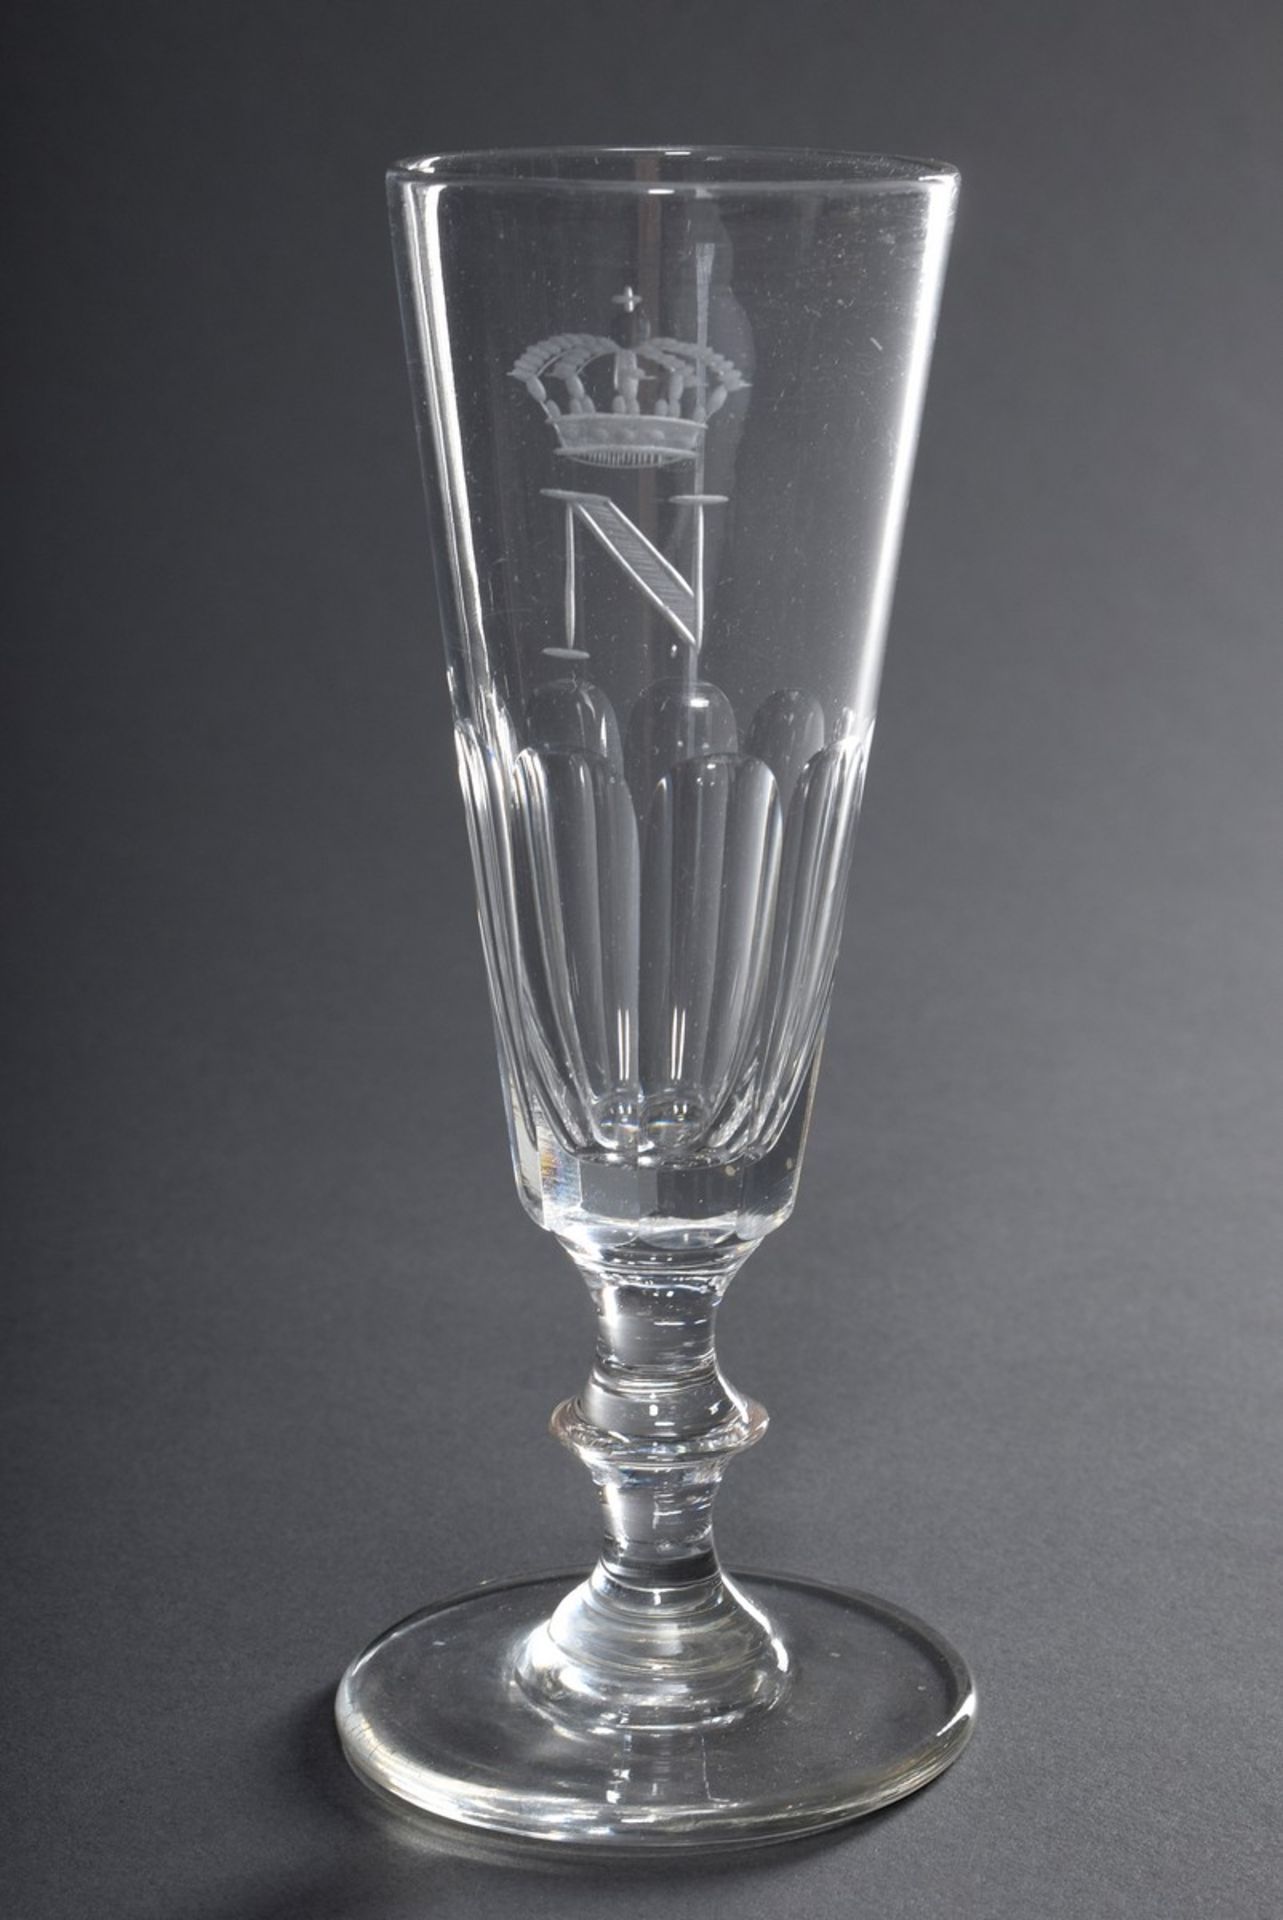 Sektflöte aus dem Gläserservice von Napoleon III. (1808-1873) mit Monogramm "N"